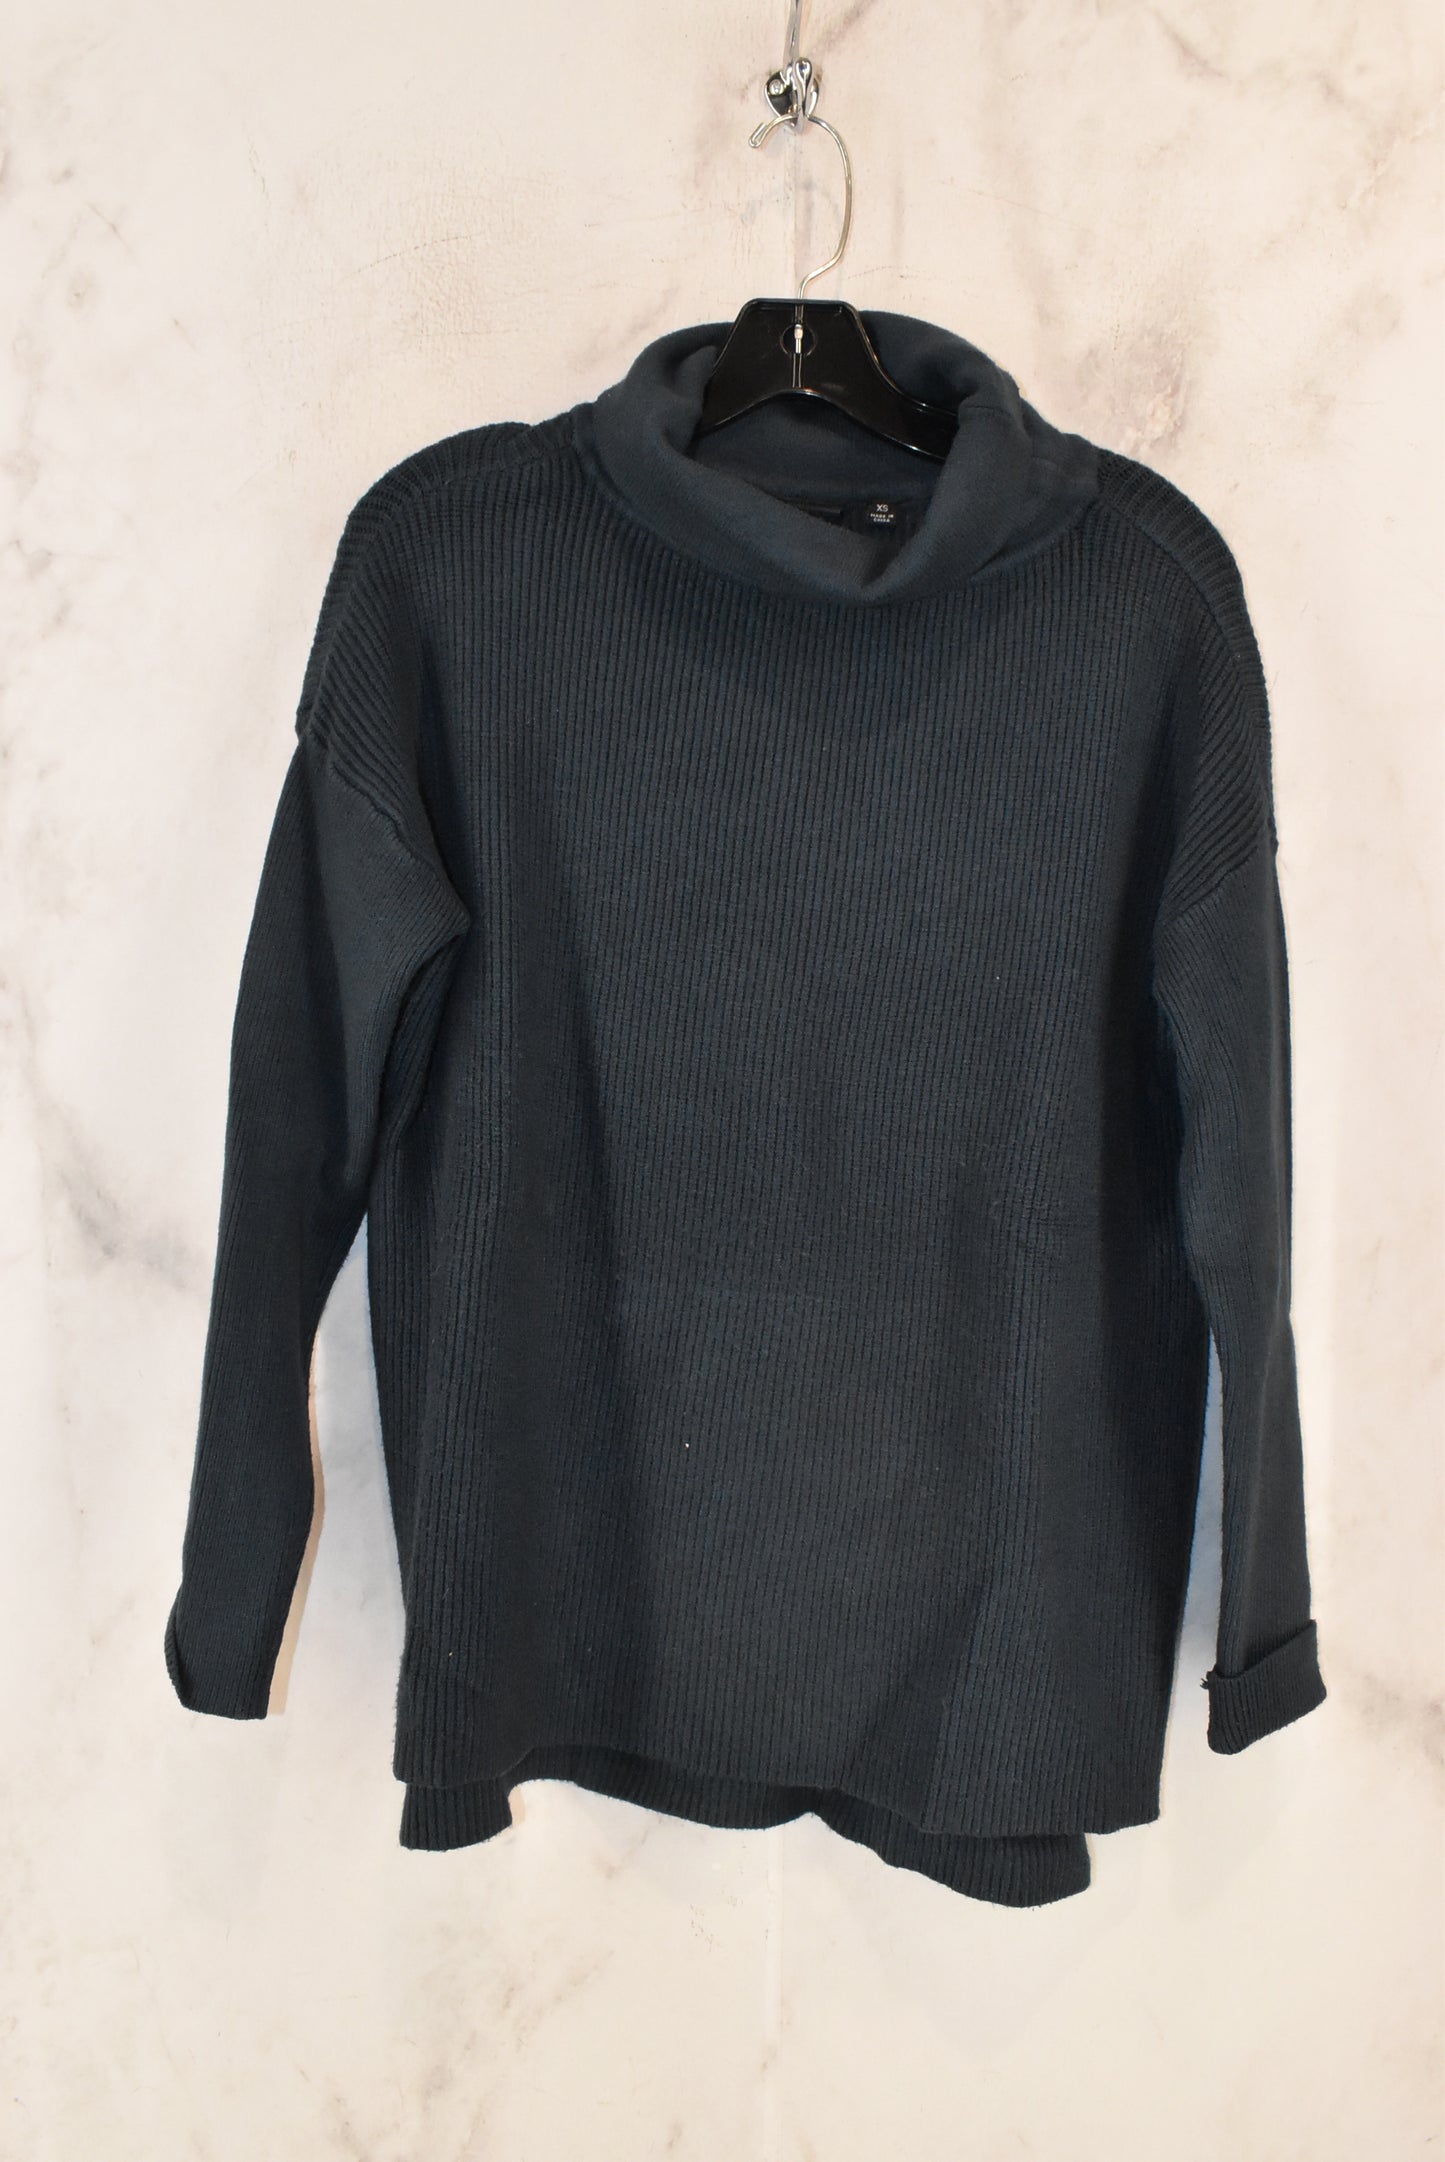 Sweater By Cyrus Knits  Size: Xs